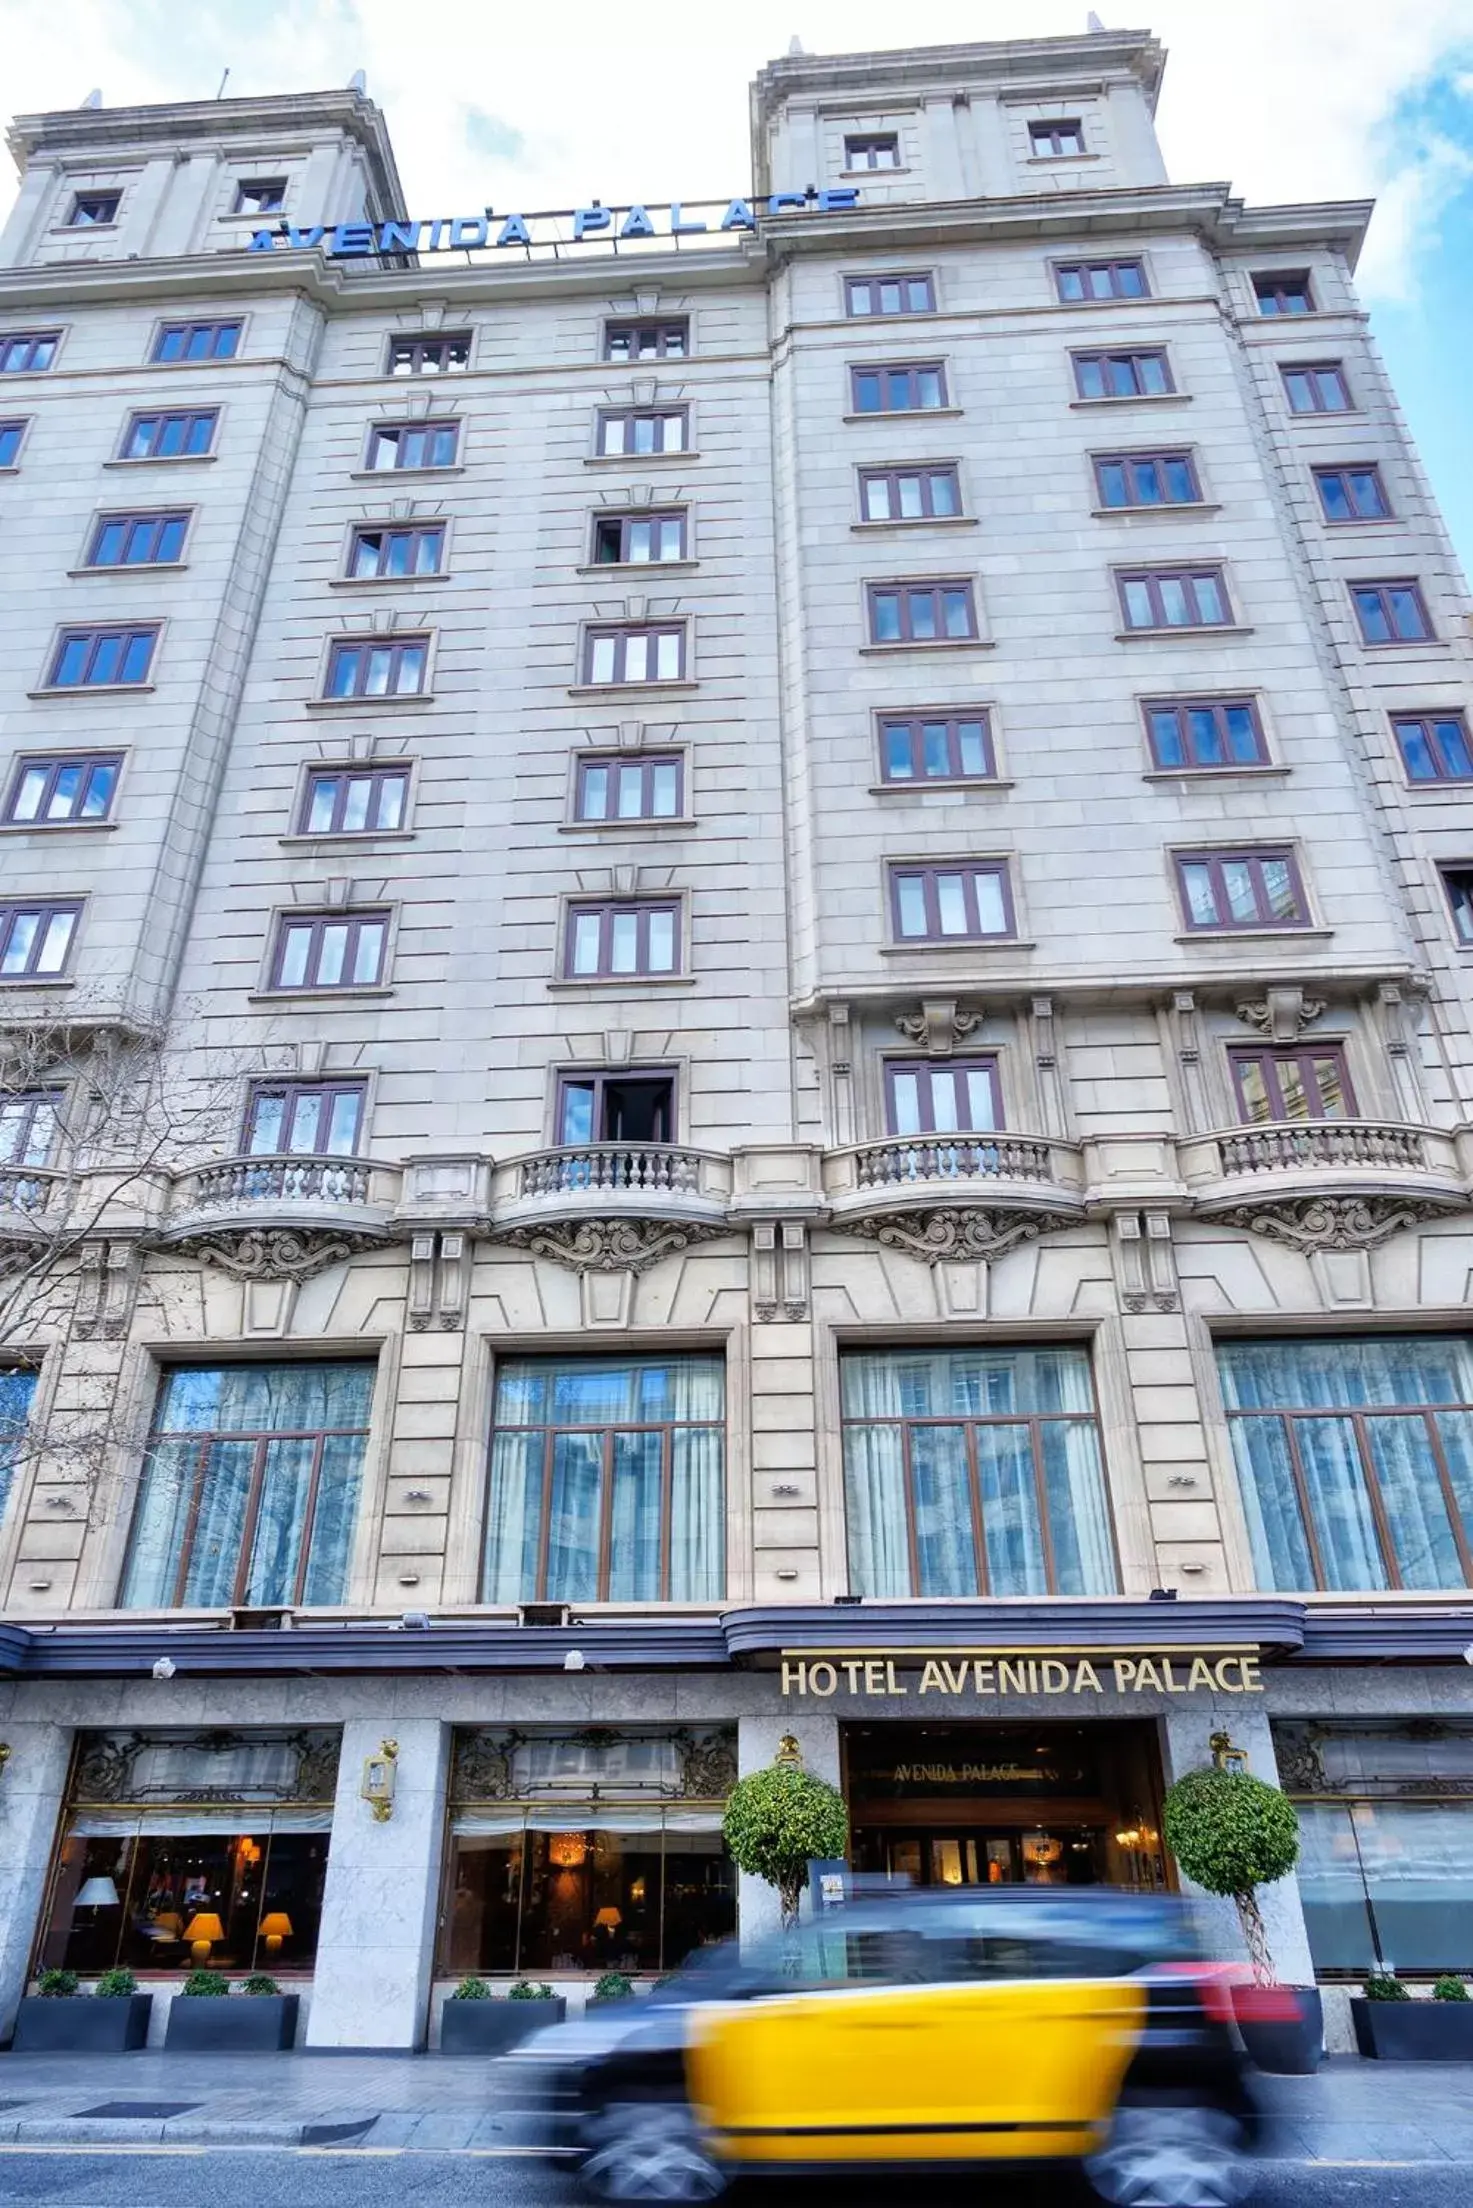 Facade/entrance, Property Building in El Avenida Palace